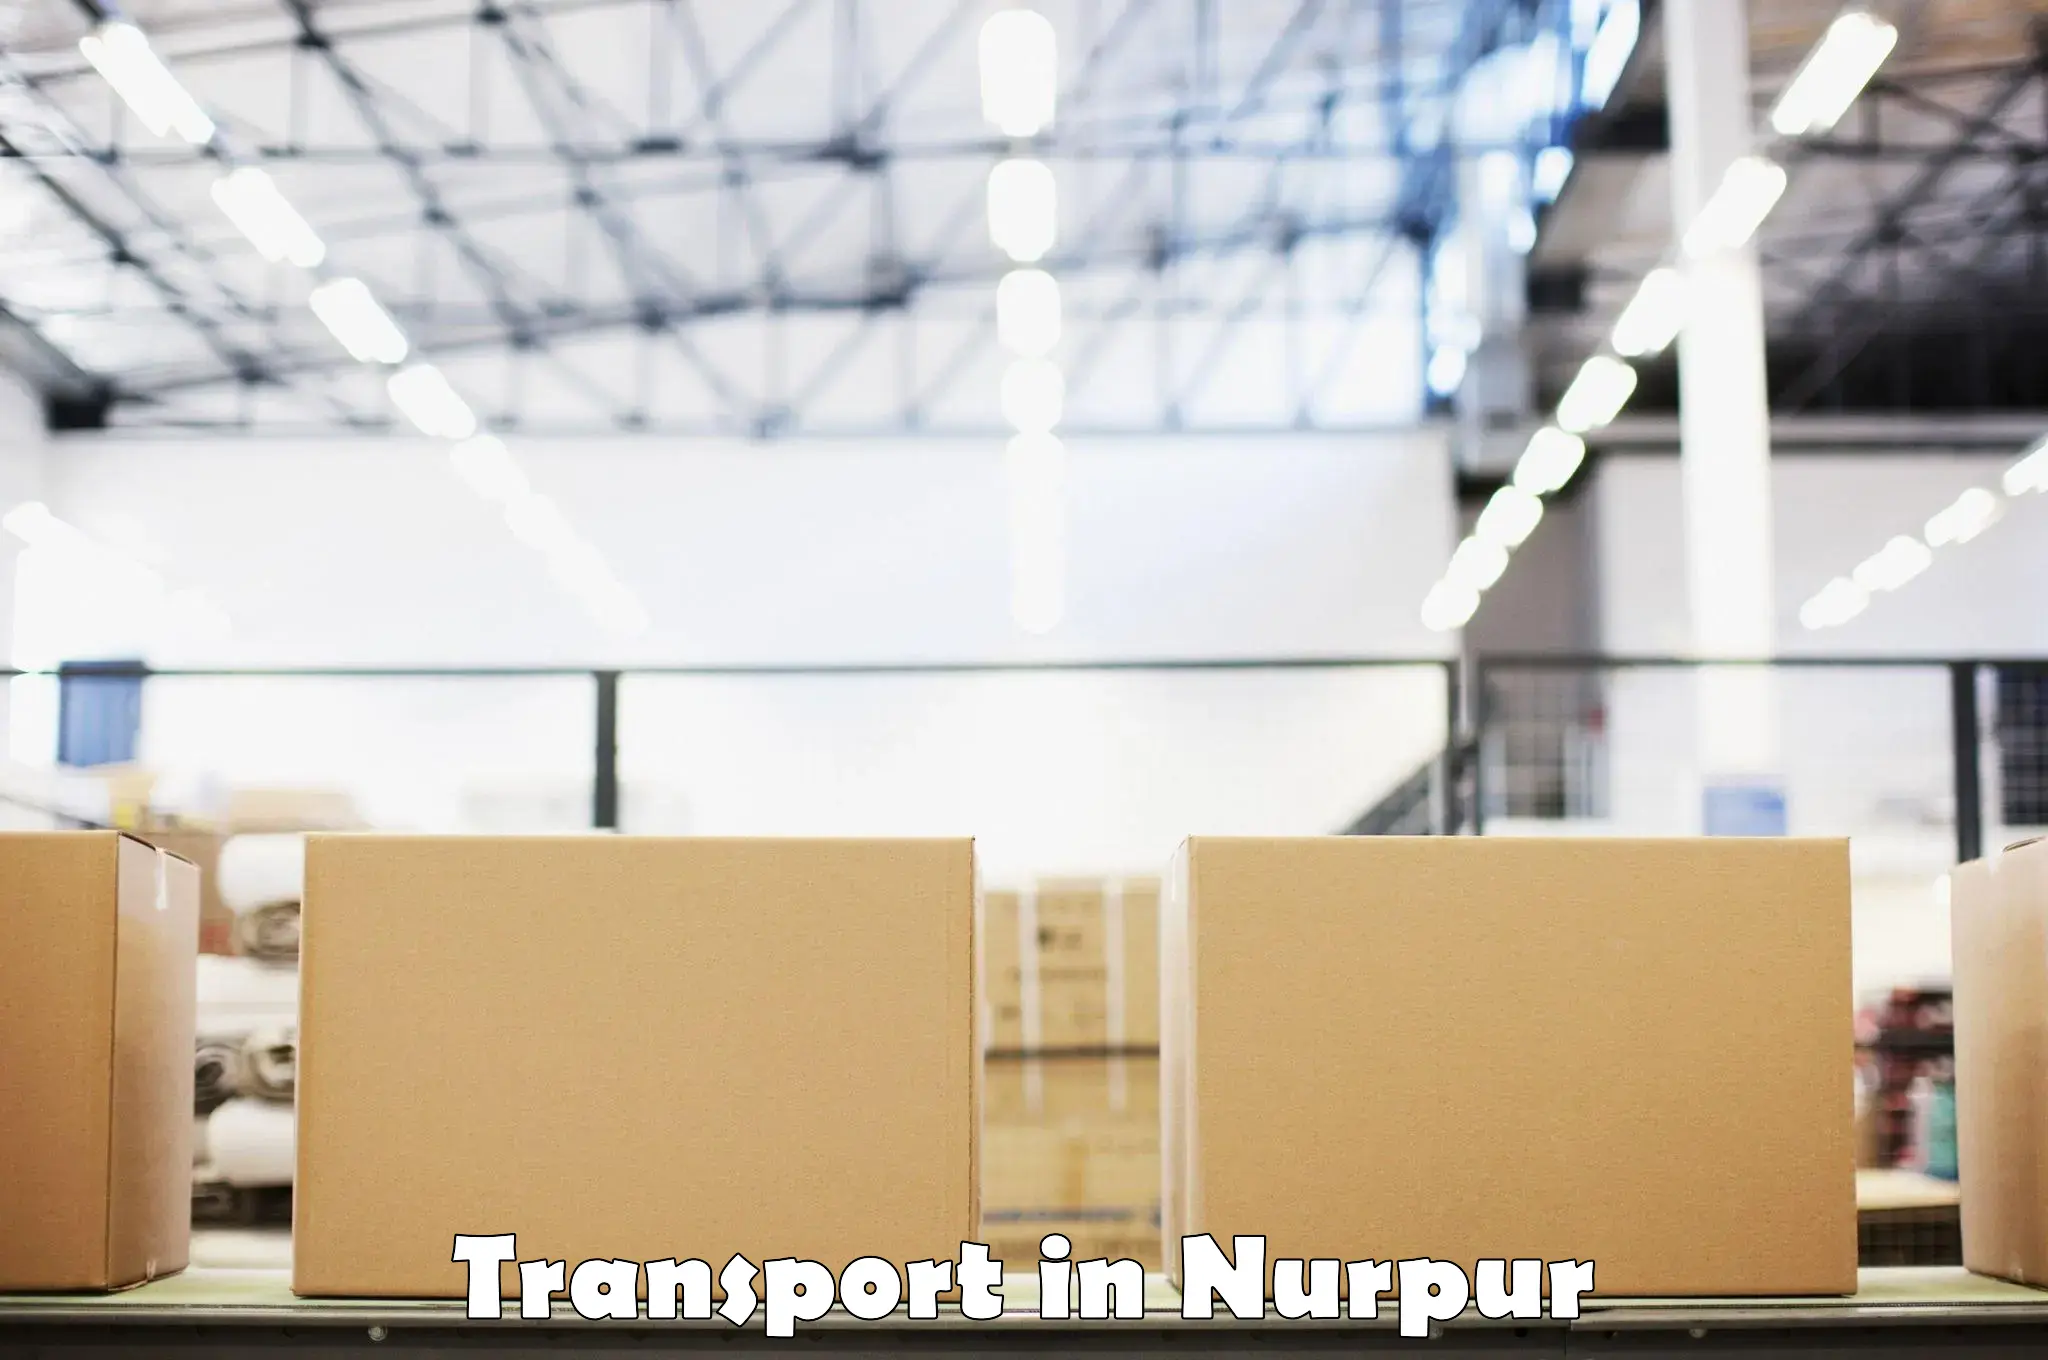 Container transport service in Nurpur